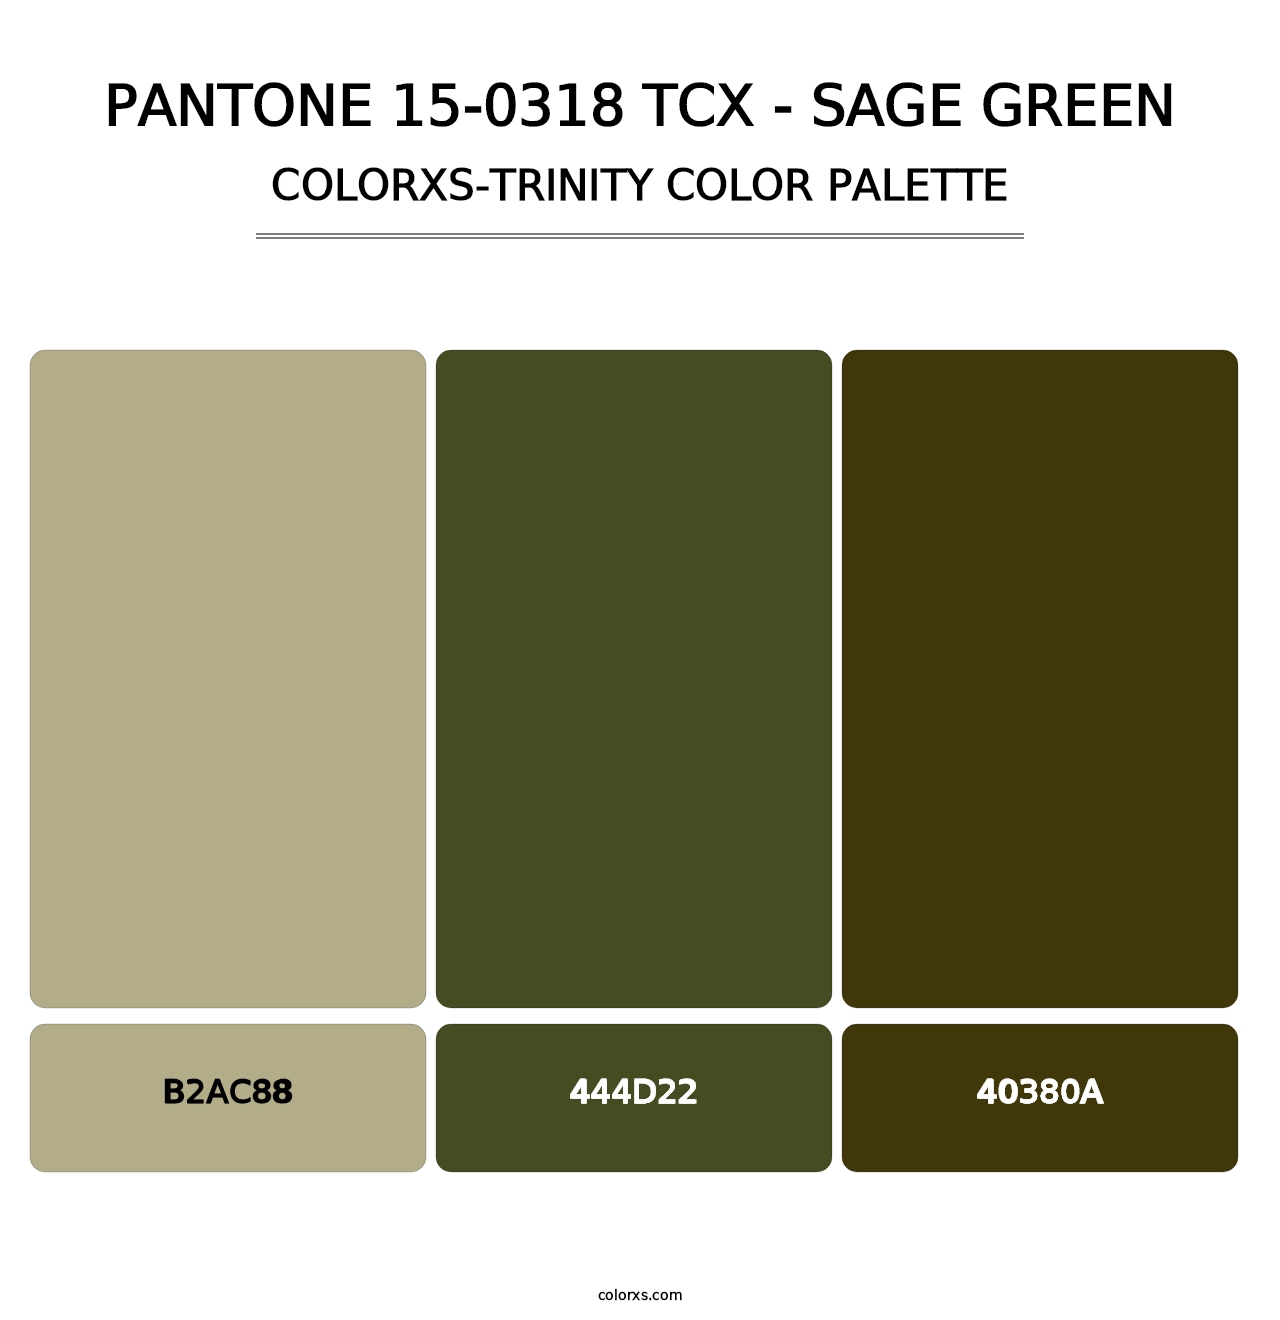 PANTONE 15-0318 TCX - Sage Green - Colorxs Trinity Palette